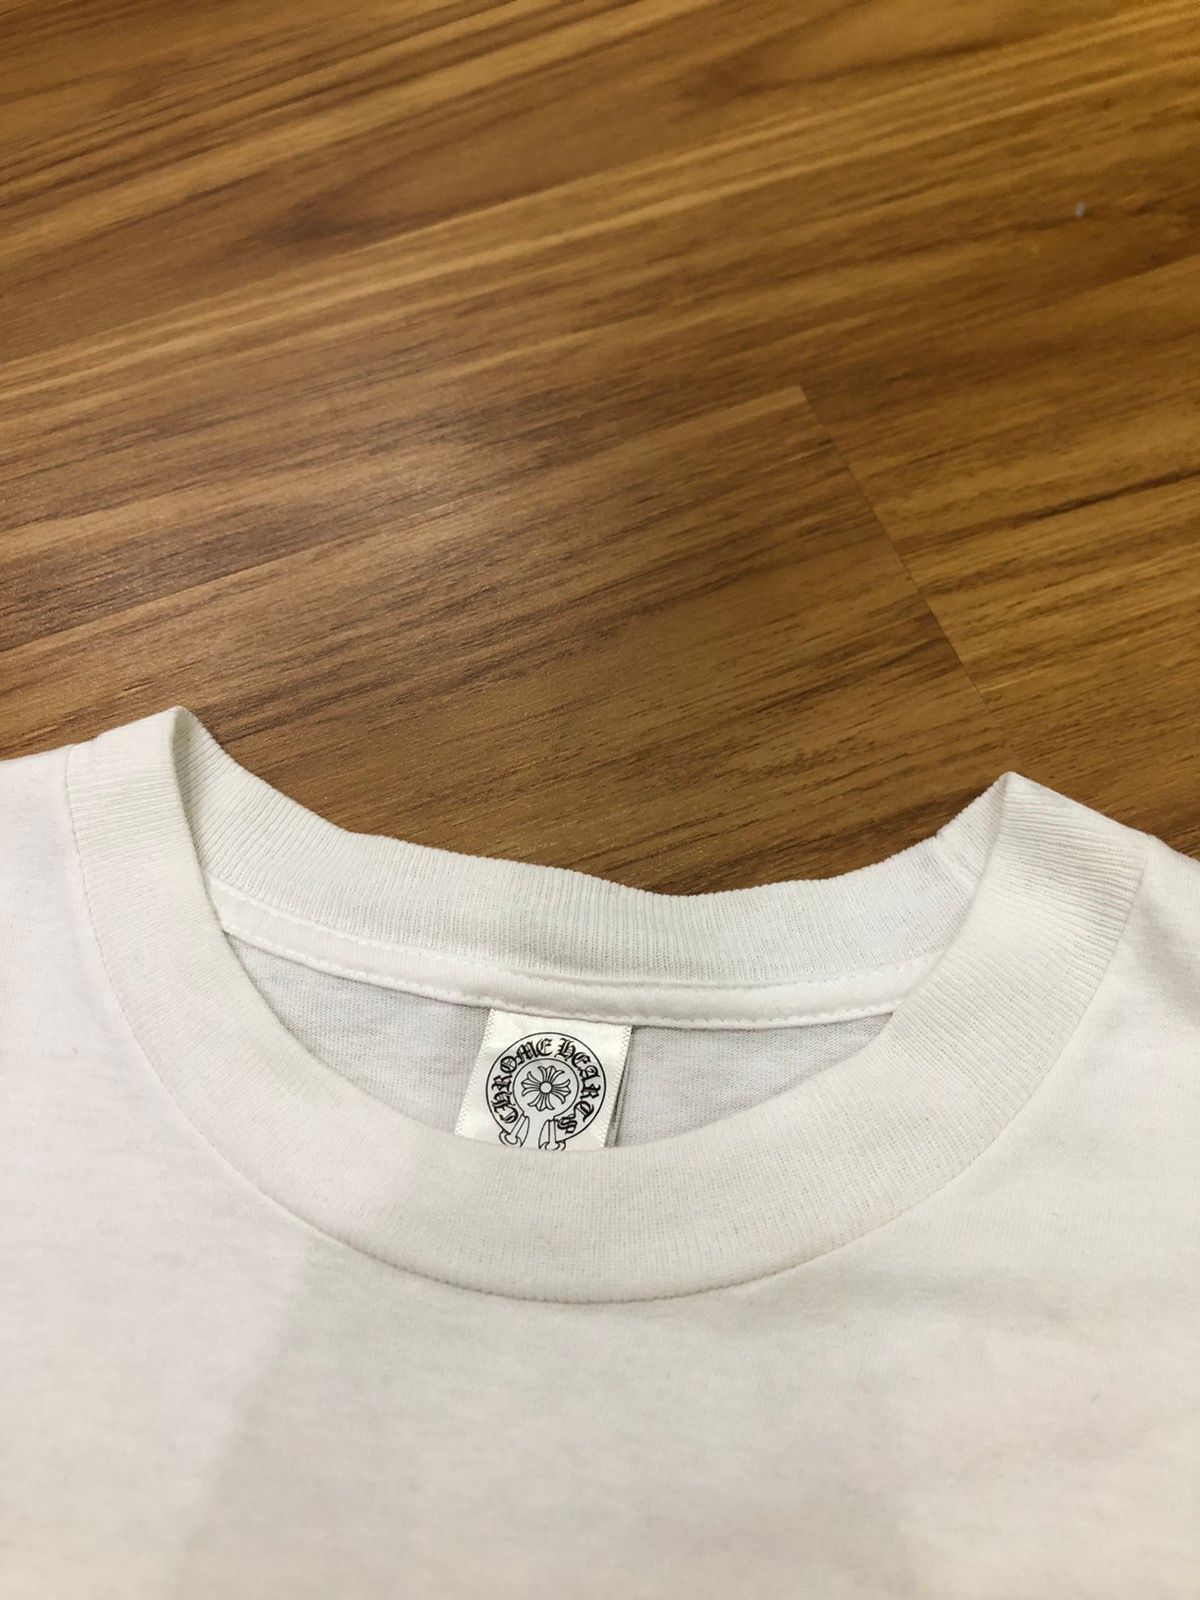 Chrome Hearts U.S.A. T-shirt (Japan Market) - 10